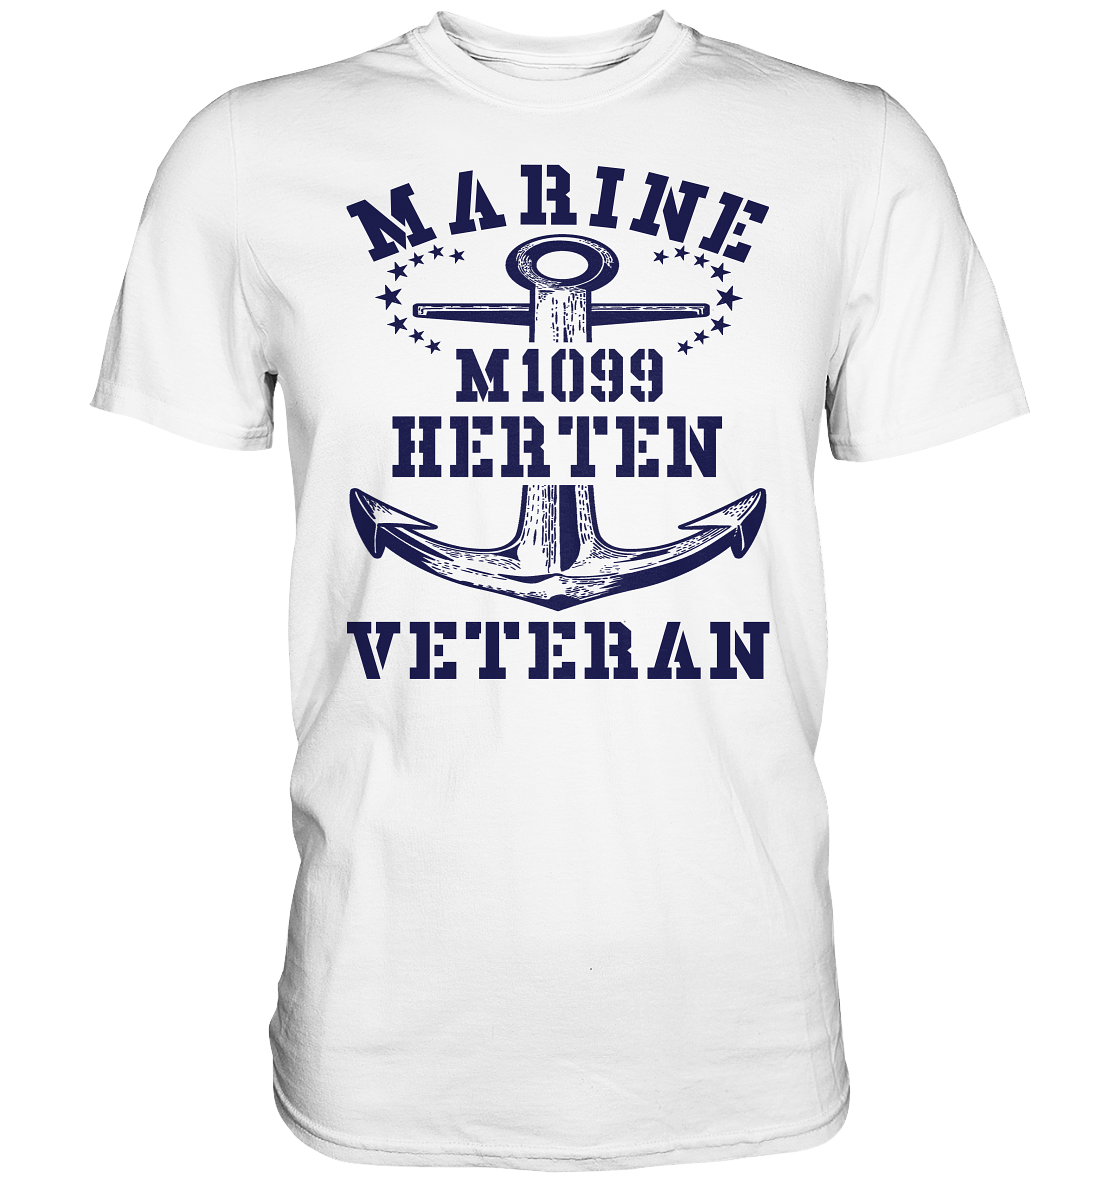 M1099 HERTEN Marine Veteran - Premium Shirt